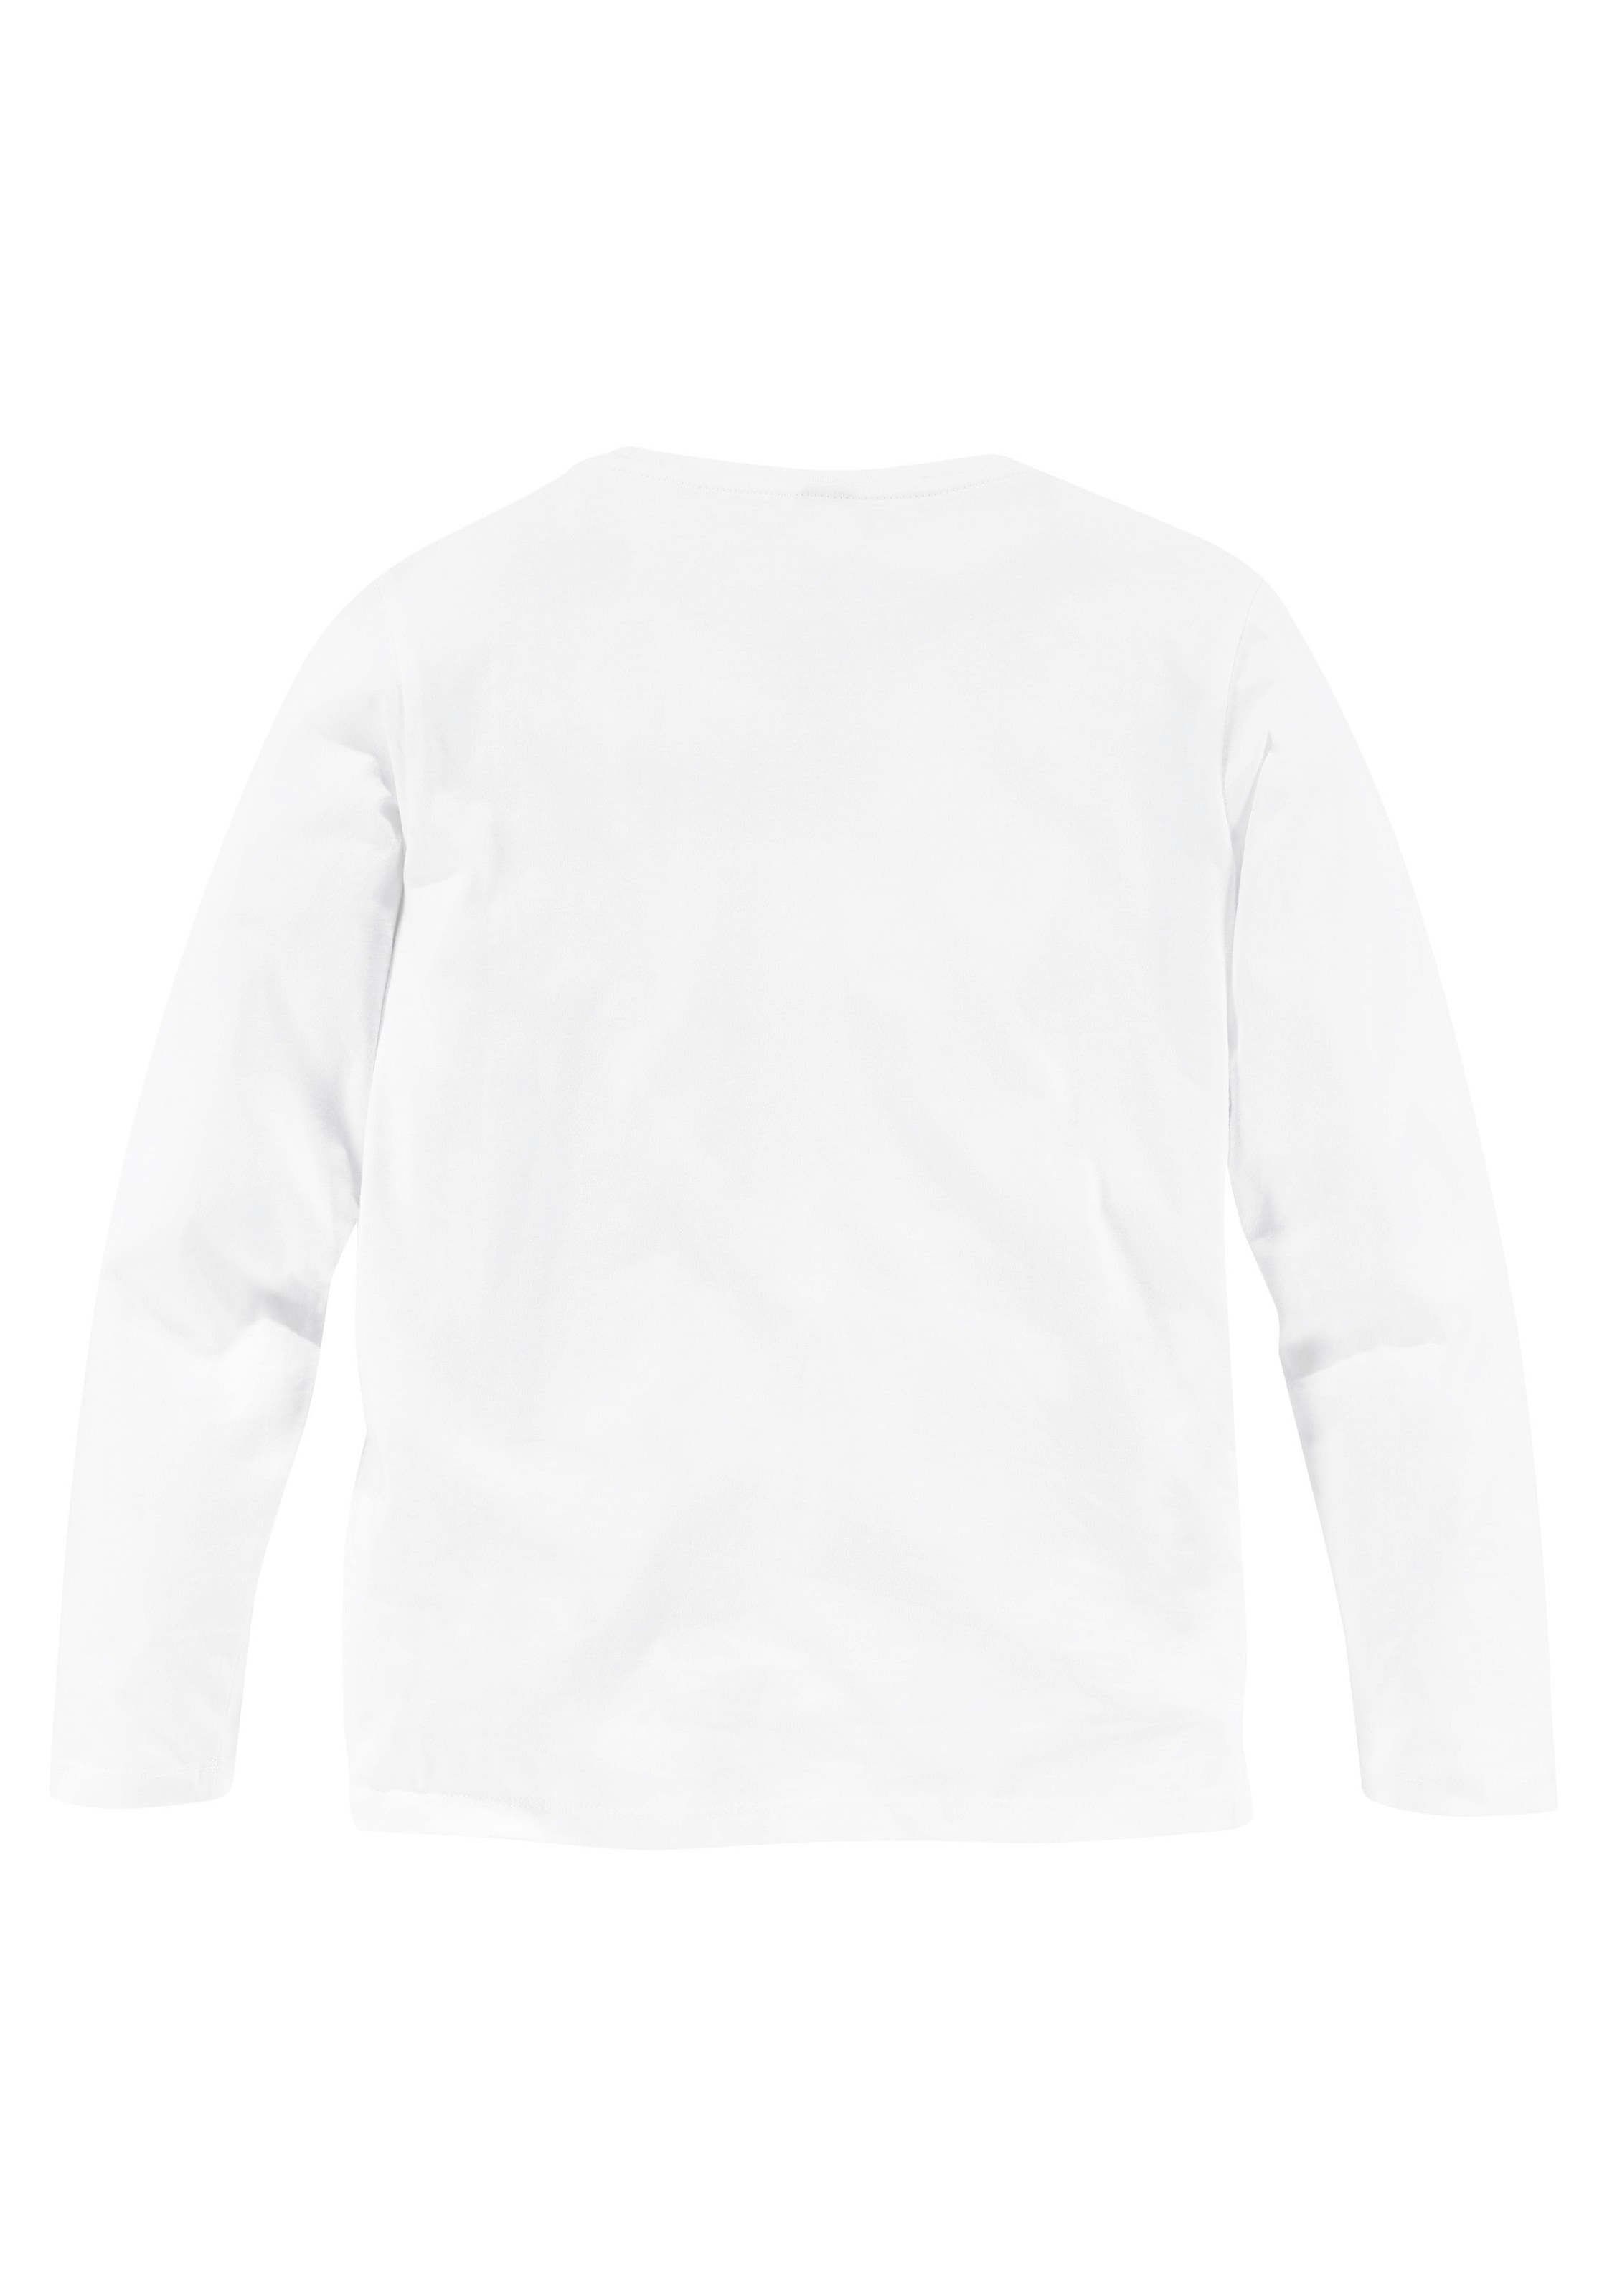 Bench. Langarmshirt, (Packung, 2 tlg., 2 Shirts), in 2 Farben und Drucken  im OTTO Online Shop